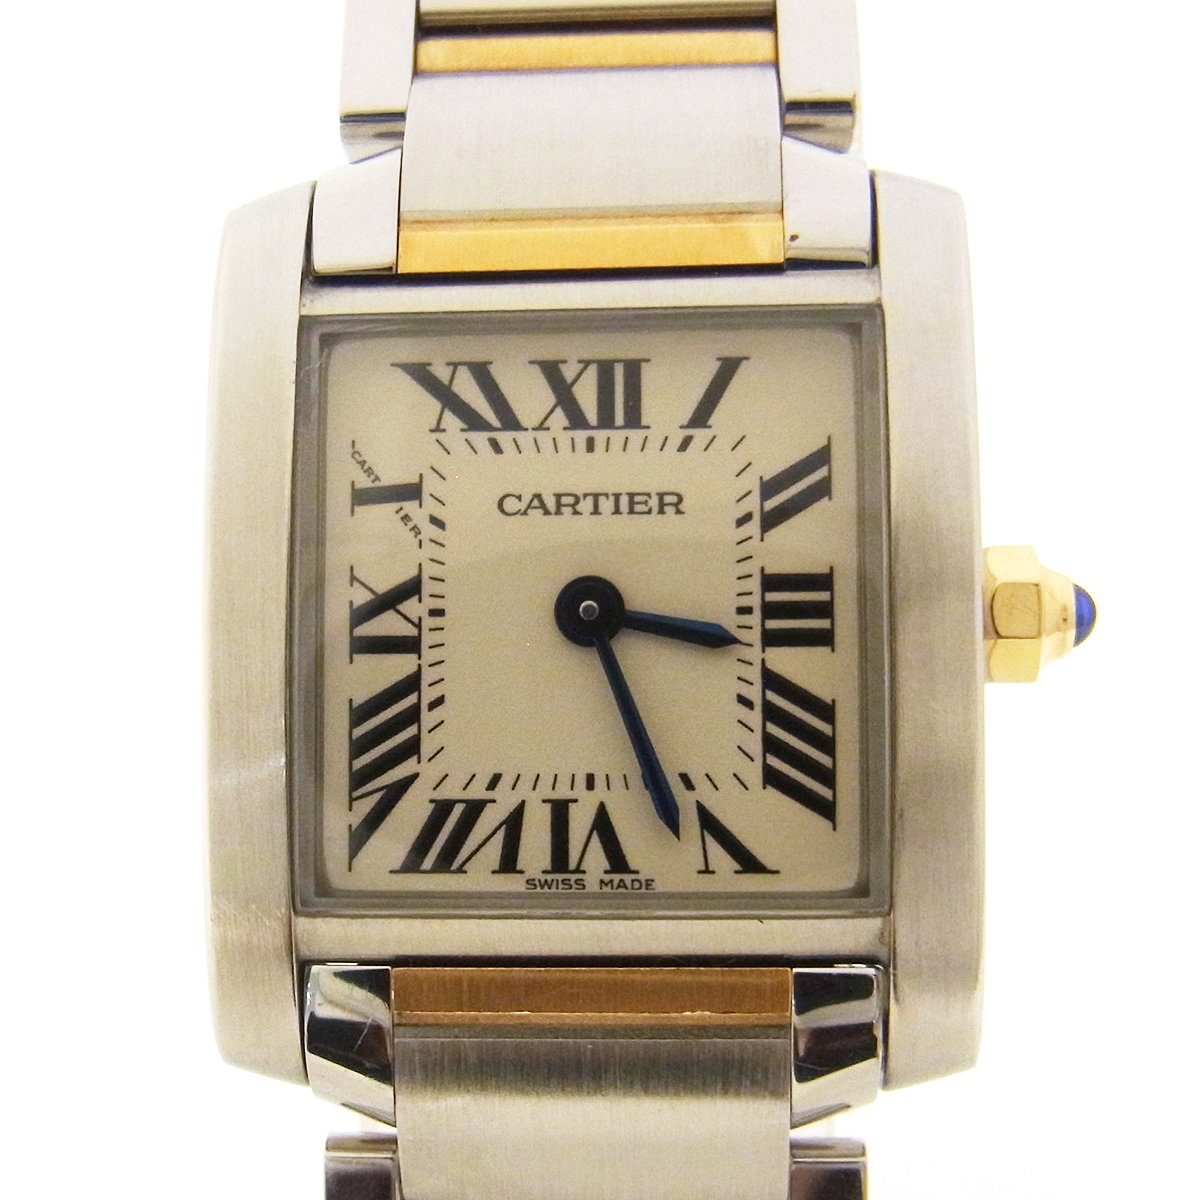 カルティエ (Cartier) タンクフランセーズSM W51007Q4 腕時計 白文字盤